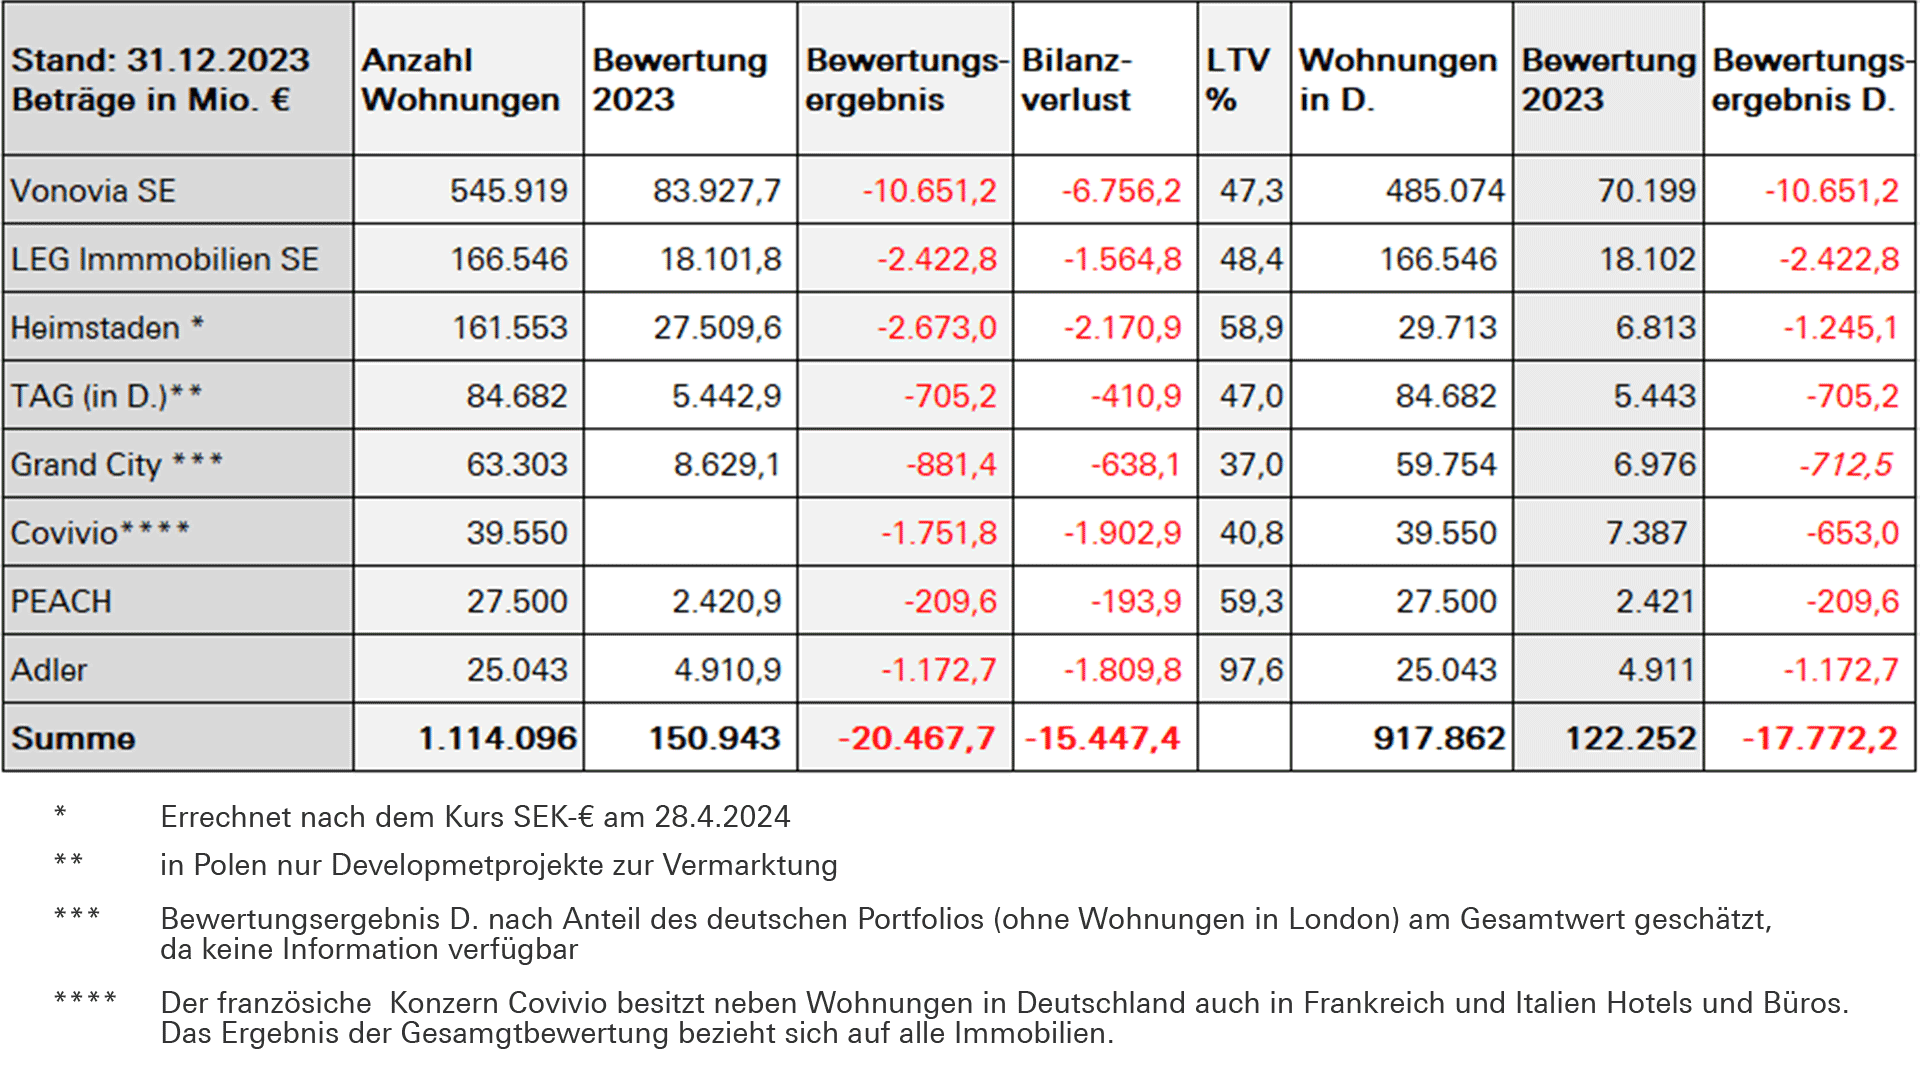 Tabelle: Wertzuschreibungen und Bilanzverluste der acht großen börsennotierten Wohnungskonzerne mit Wohnungen in Deutschland. Autor: Knut Unger